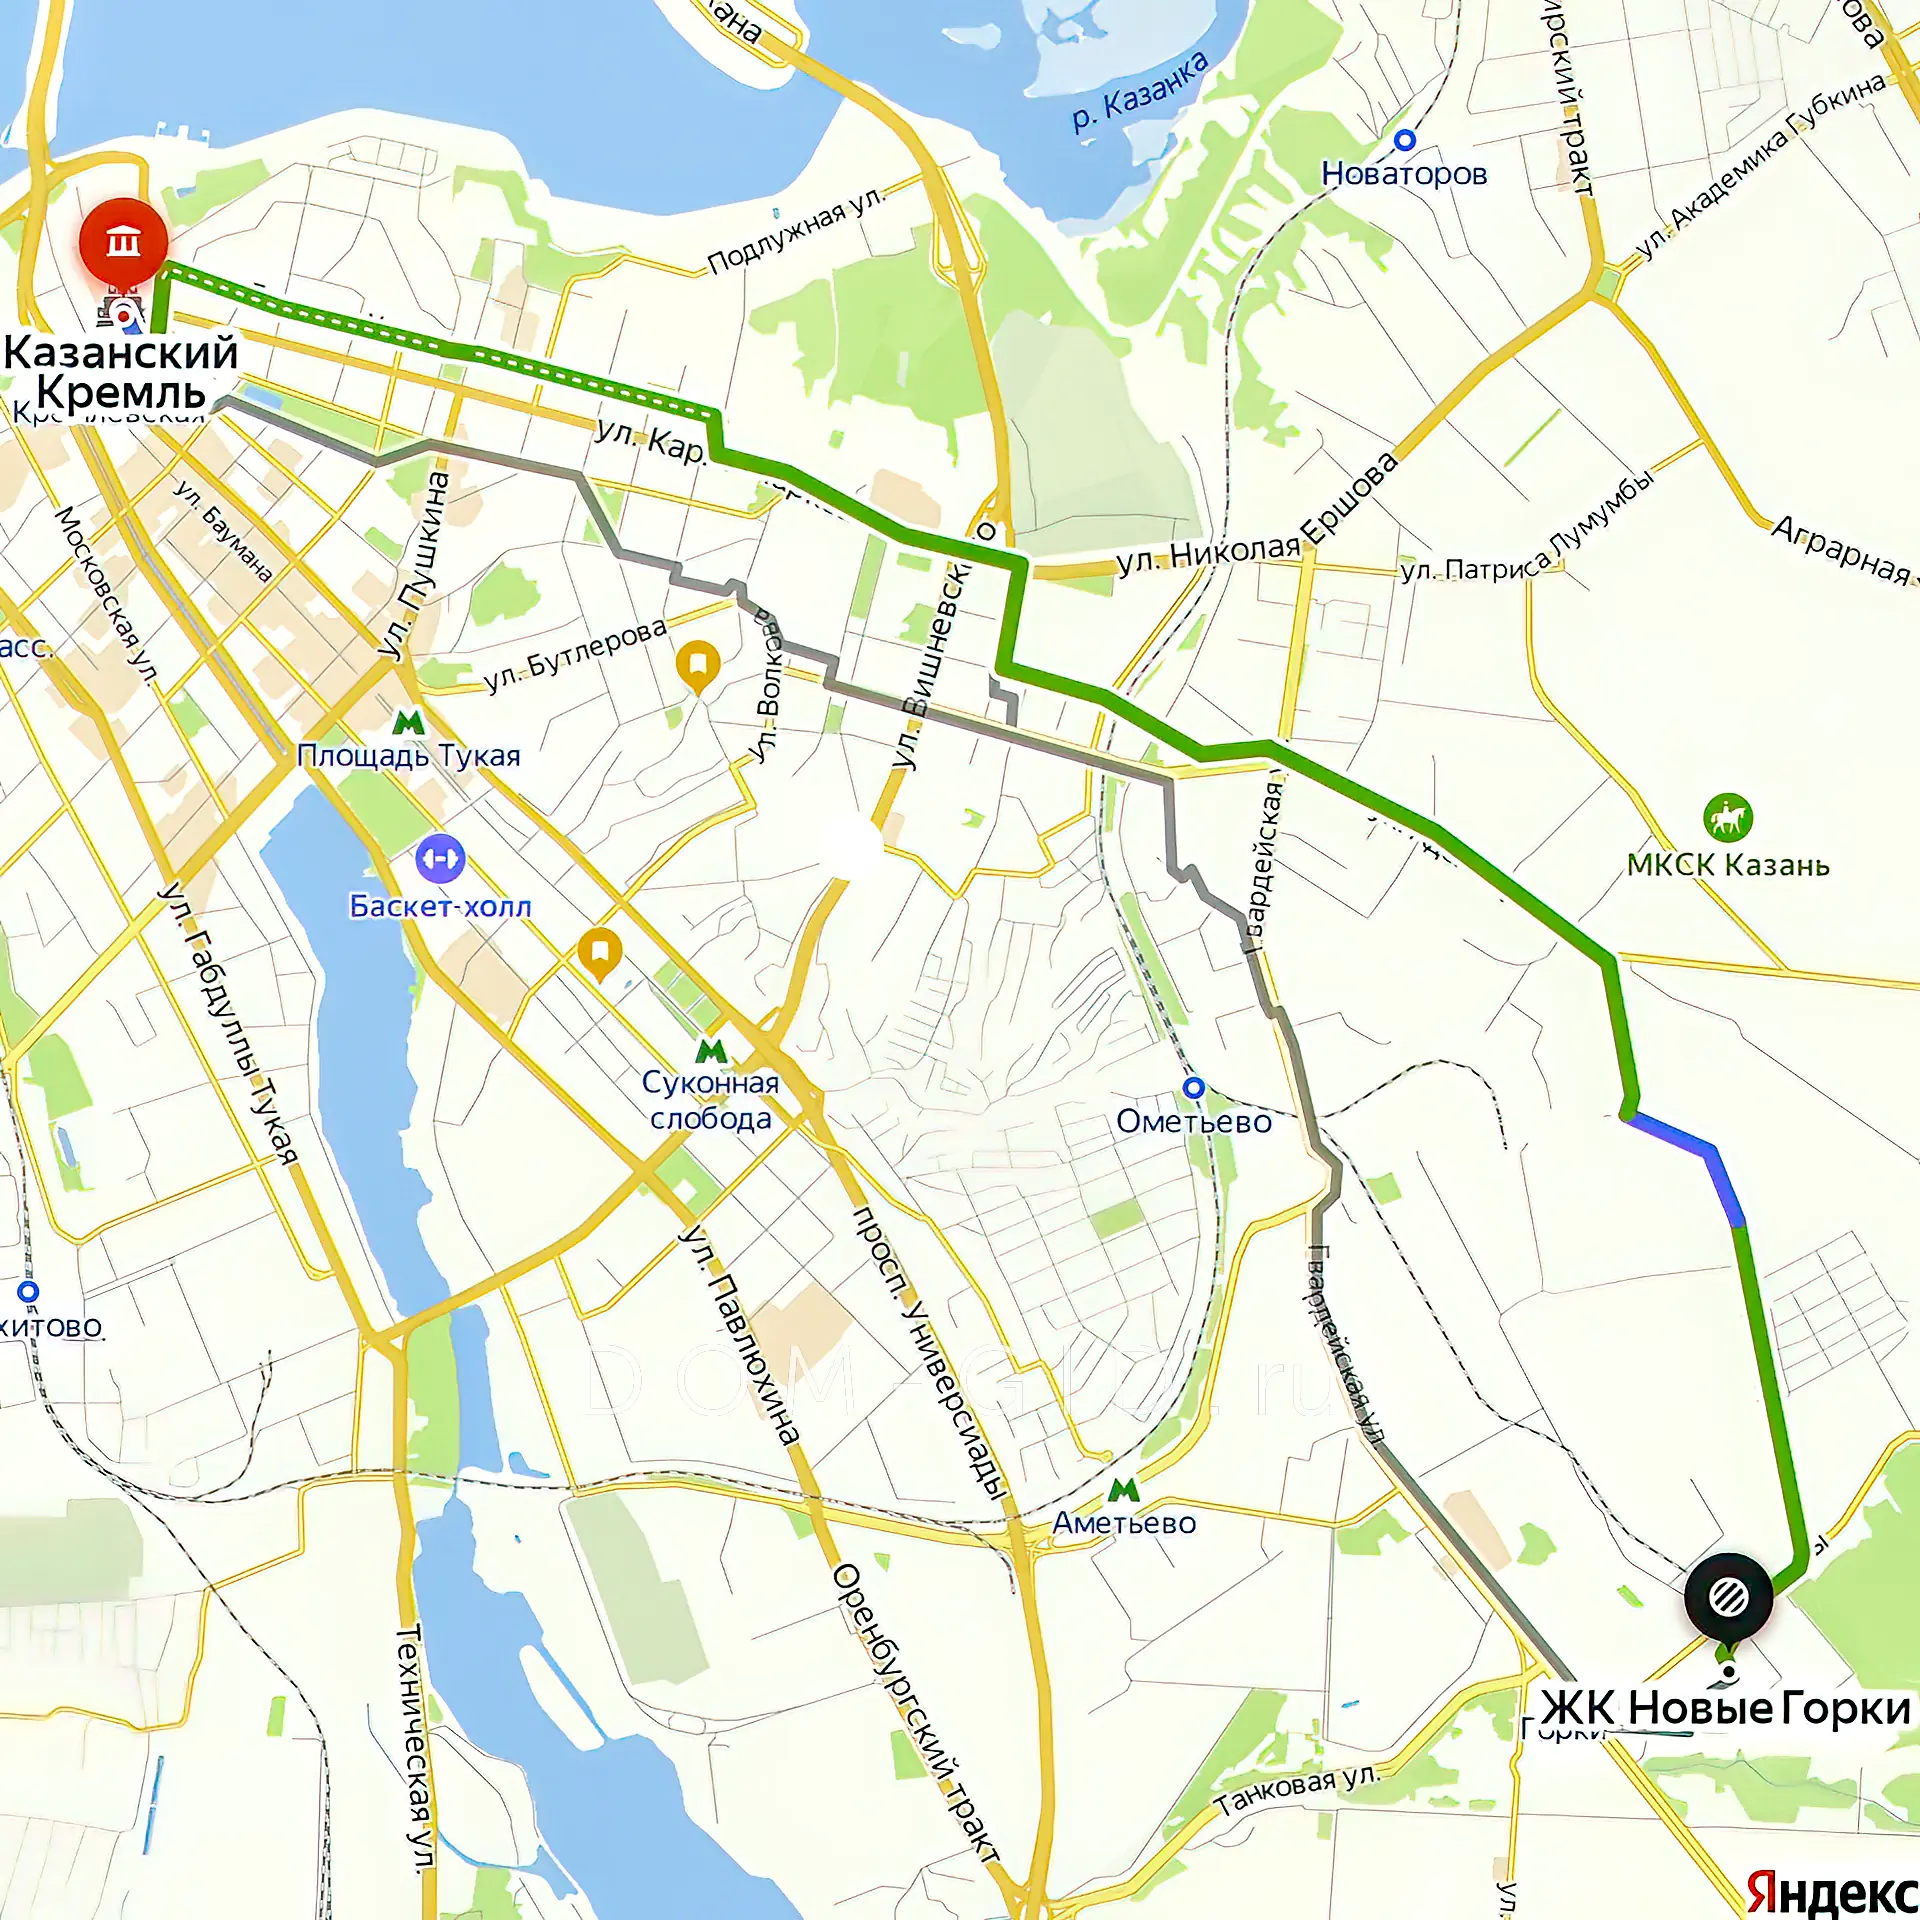 Расположение и маршрут на карте от ЖК Город-парк Новые Горки до центра города